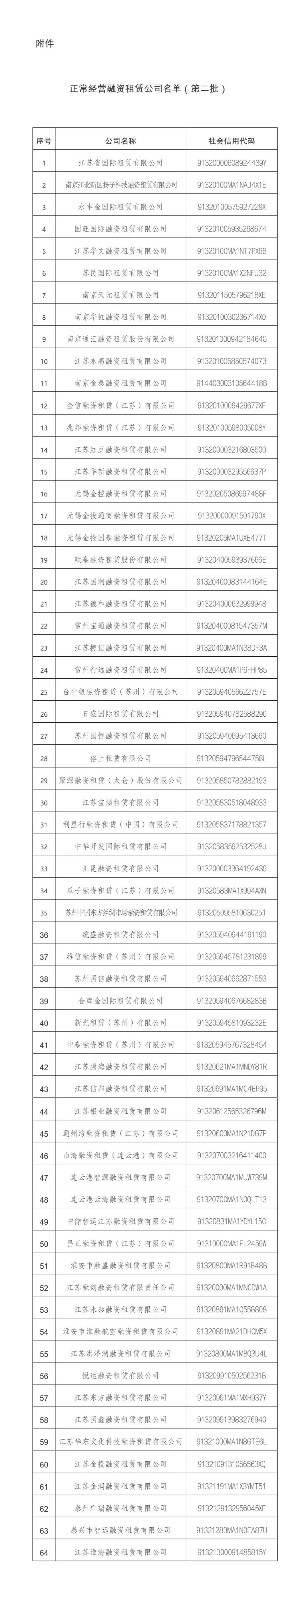 【监管动态】共64家！江苏省公布正常经营融资租赁公司名单（第二批）